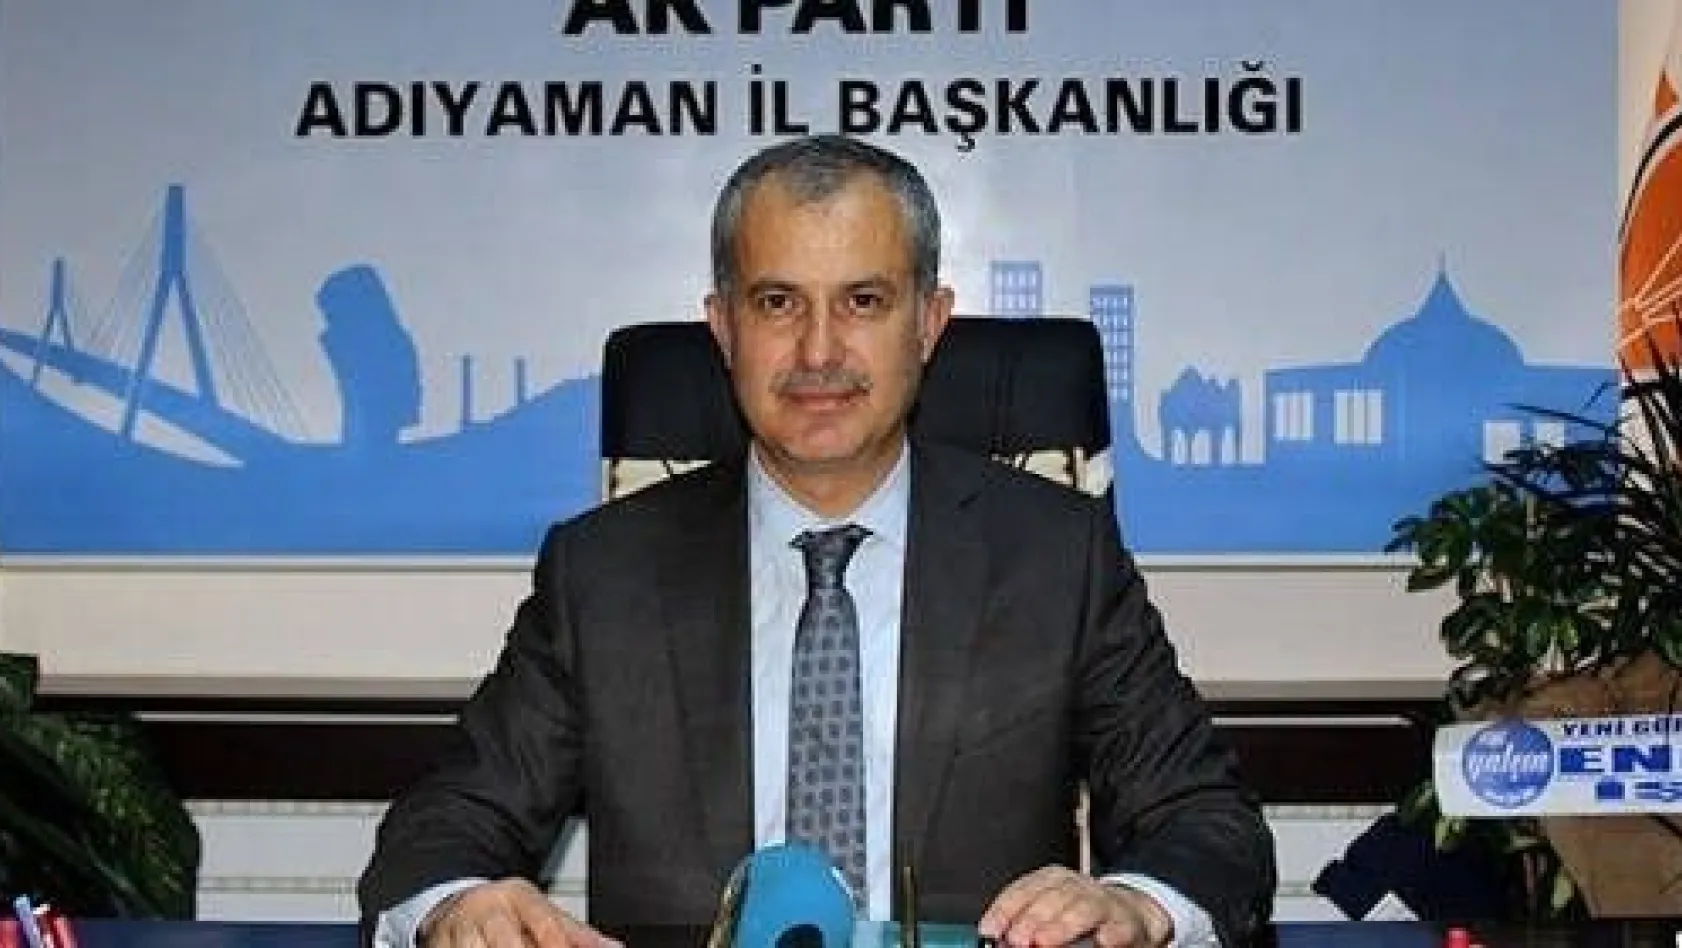 AK Parti Adıyaman İl Başkanı istifa etti
